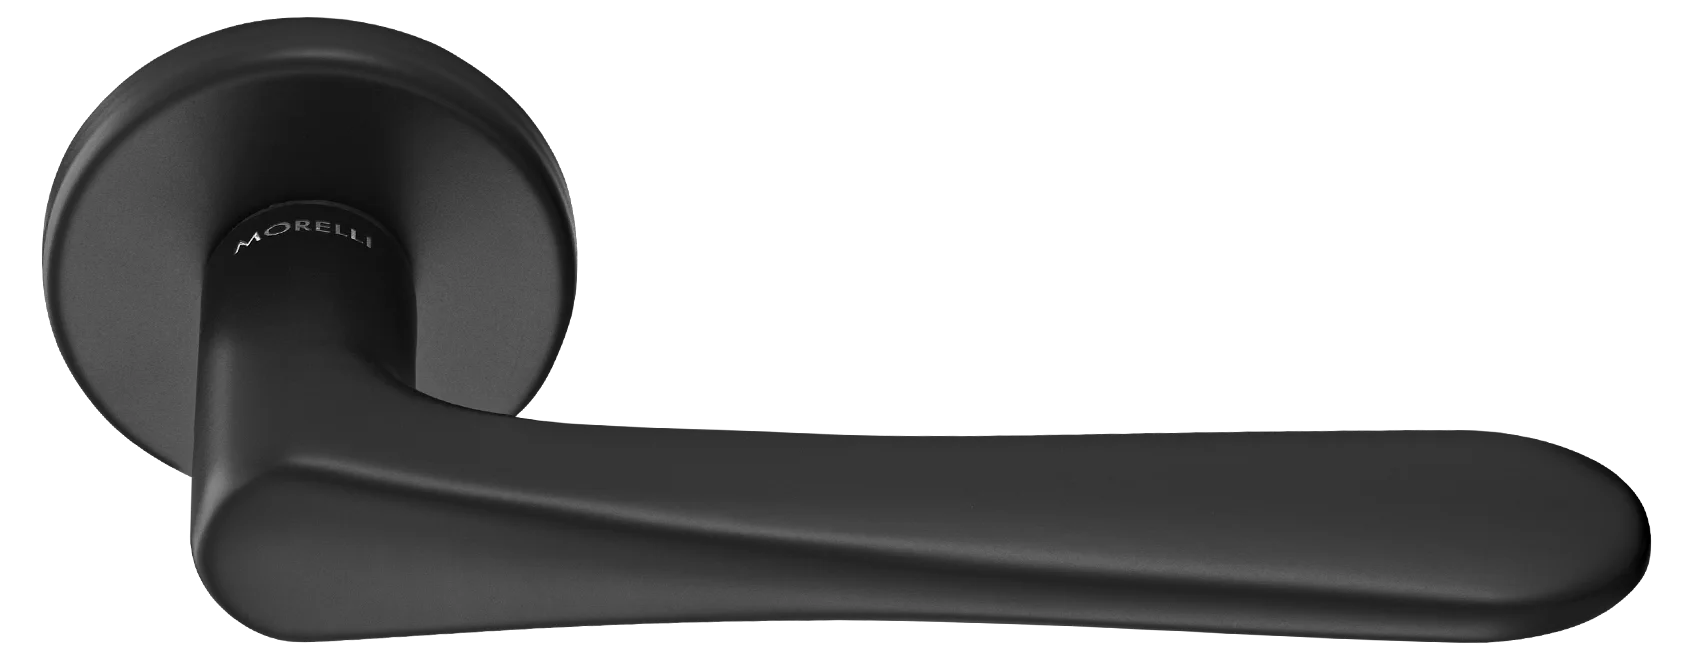 AULA R5 NERO, ручка дверная на розетке 7мм, цвет -  черный фото купить Актау